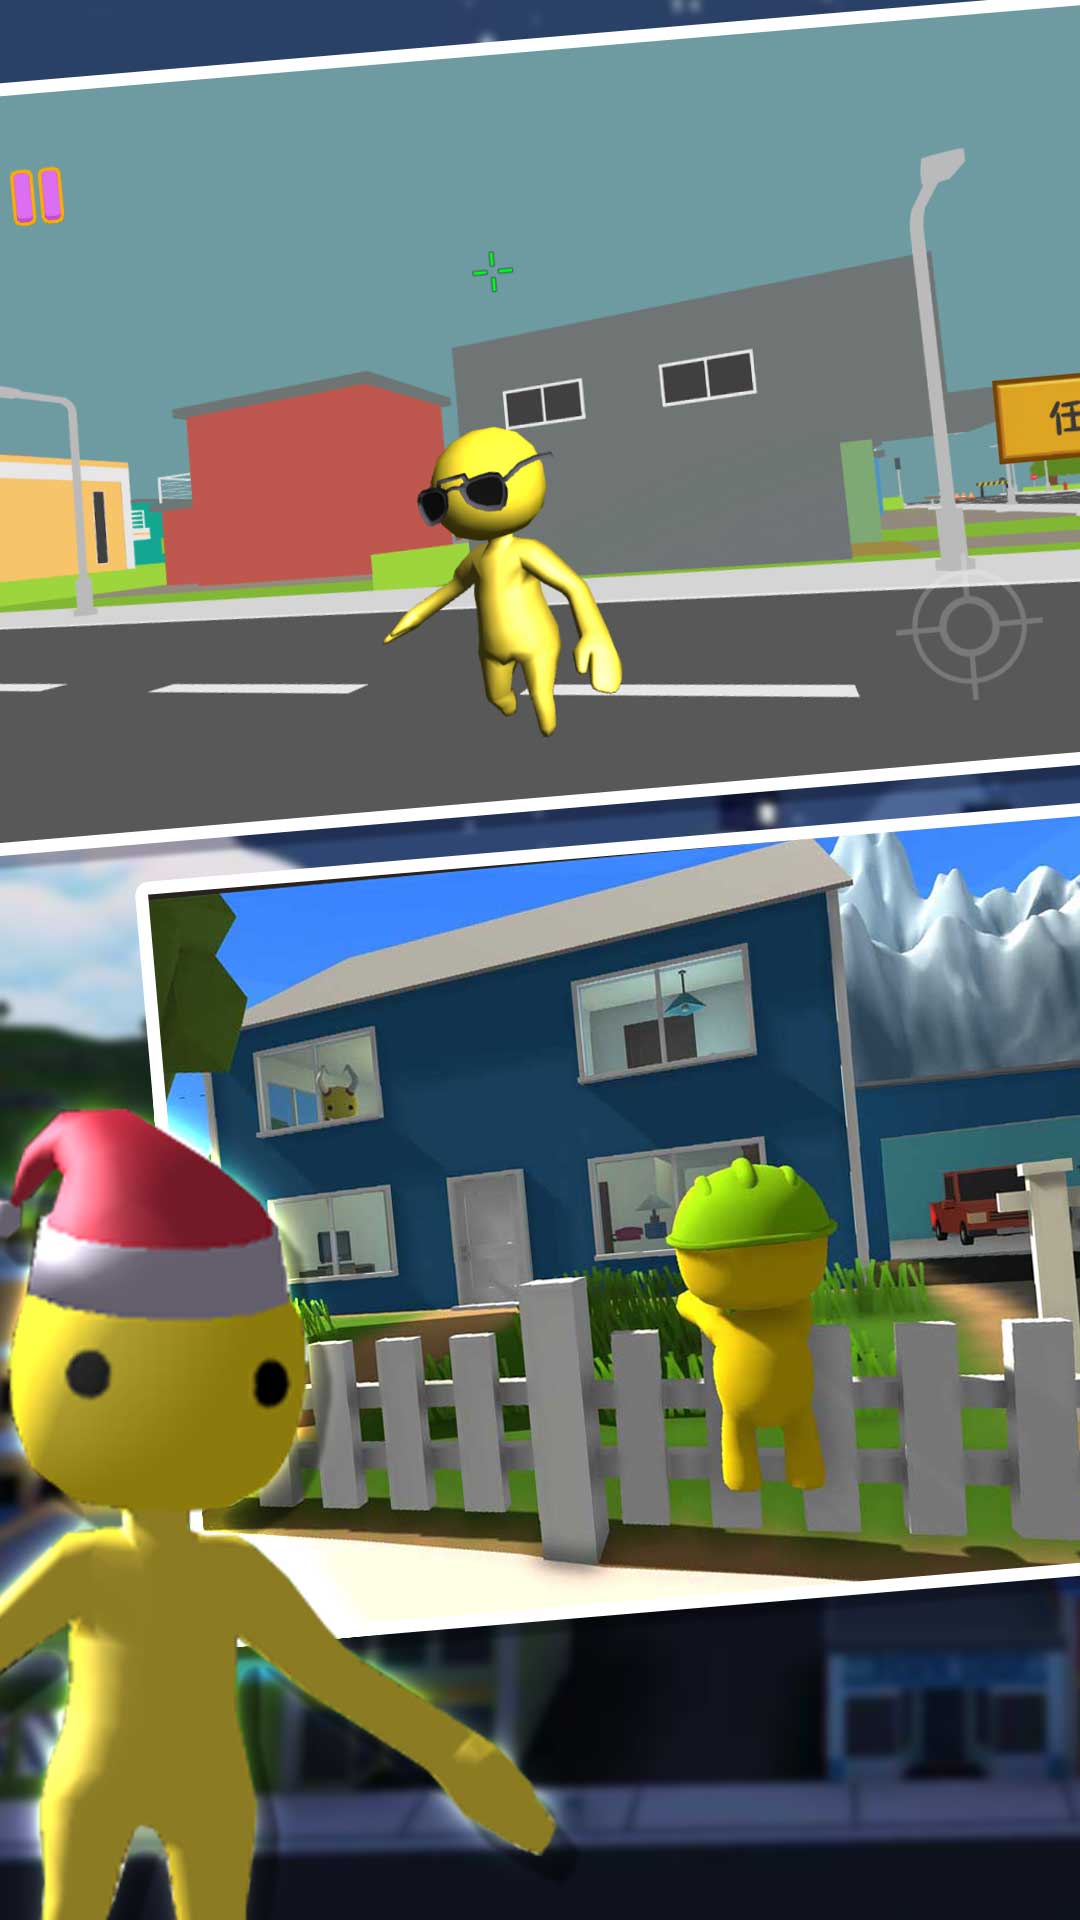 小黄人模拟器游戏安卓版安卓版下载-小黄人模拟器游戏安卓版手游下载